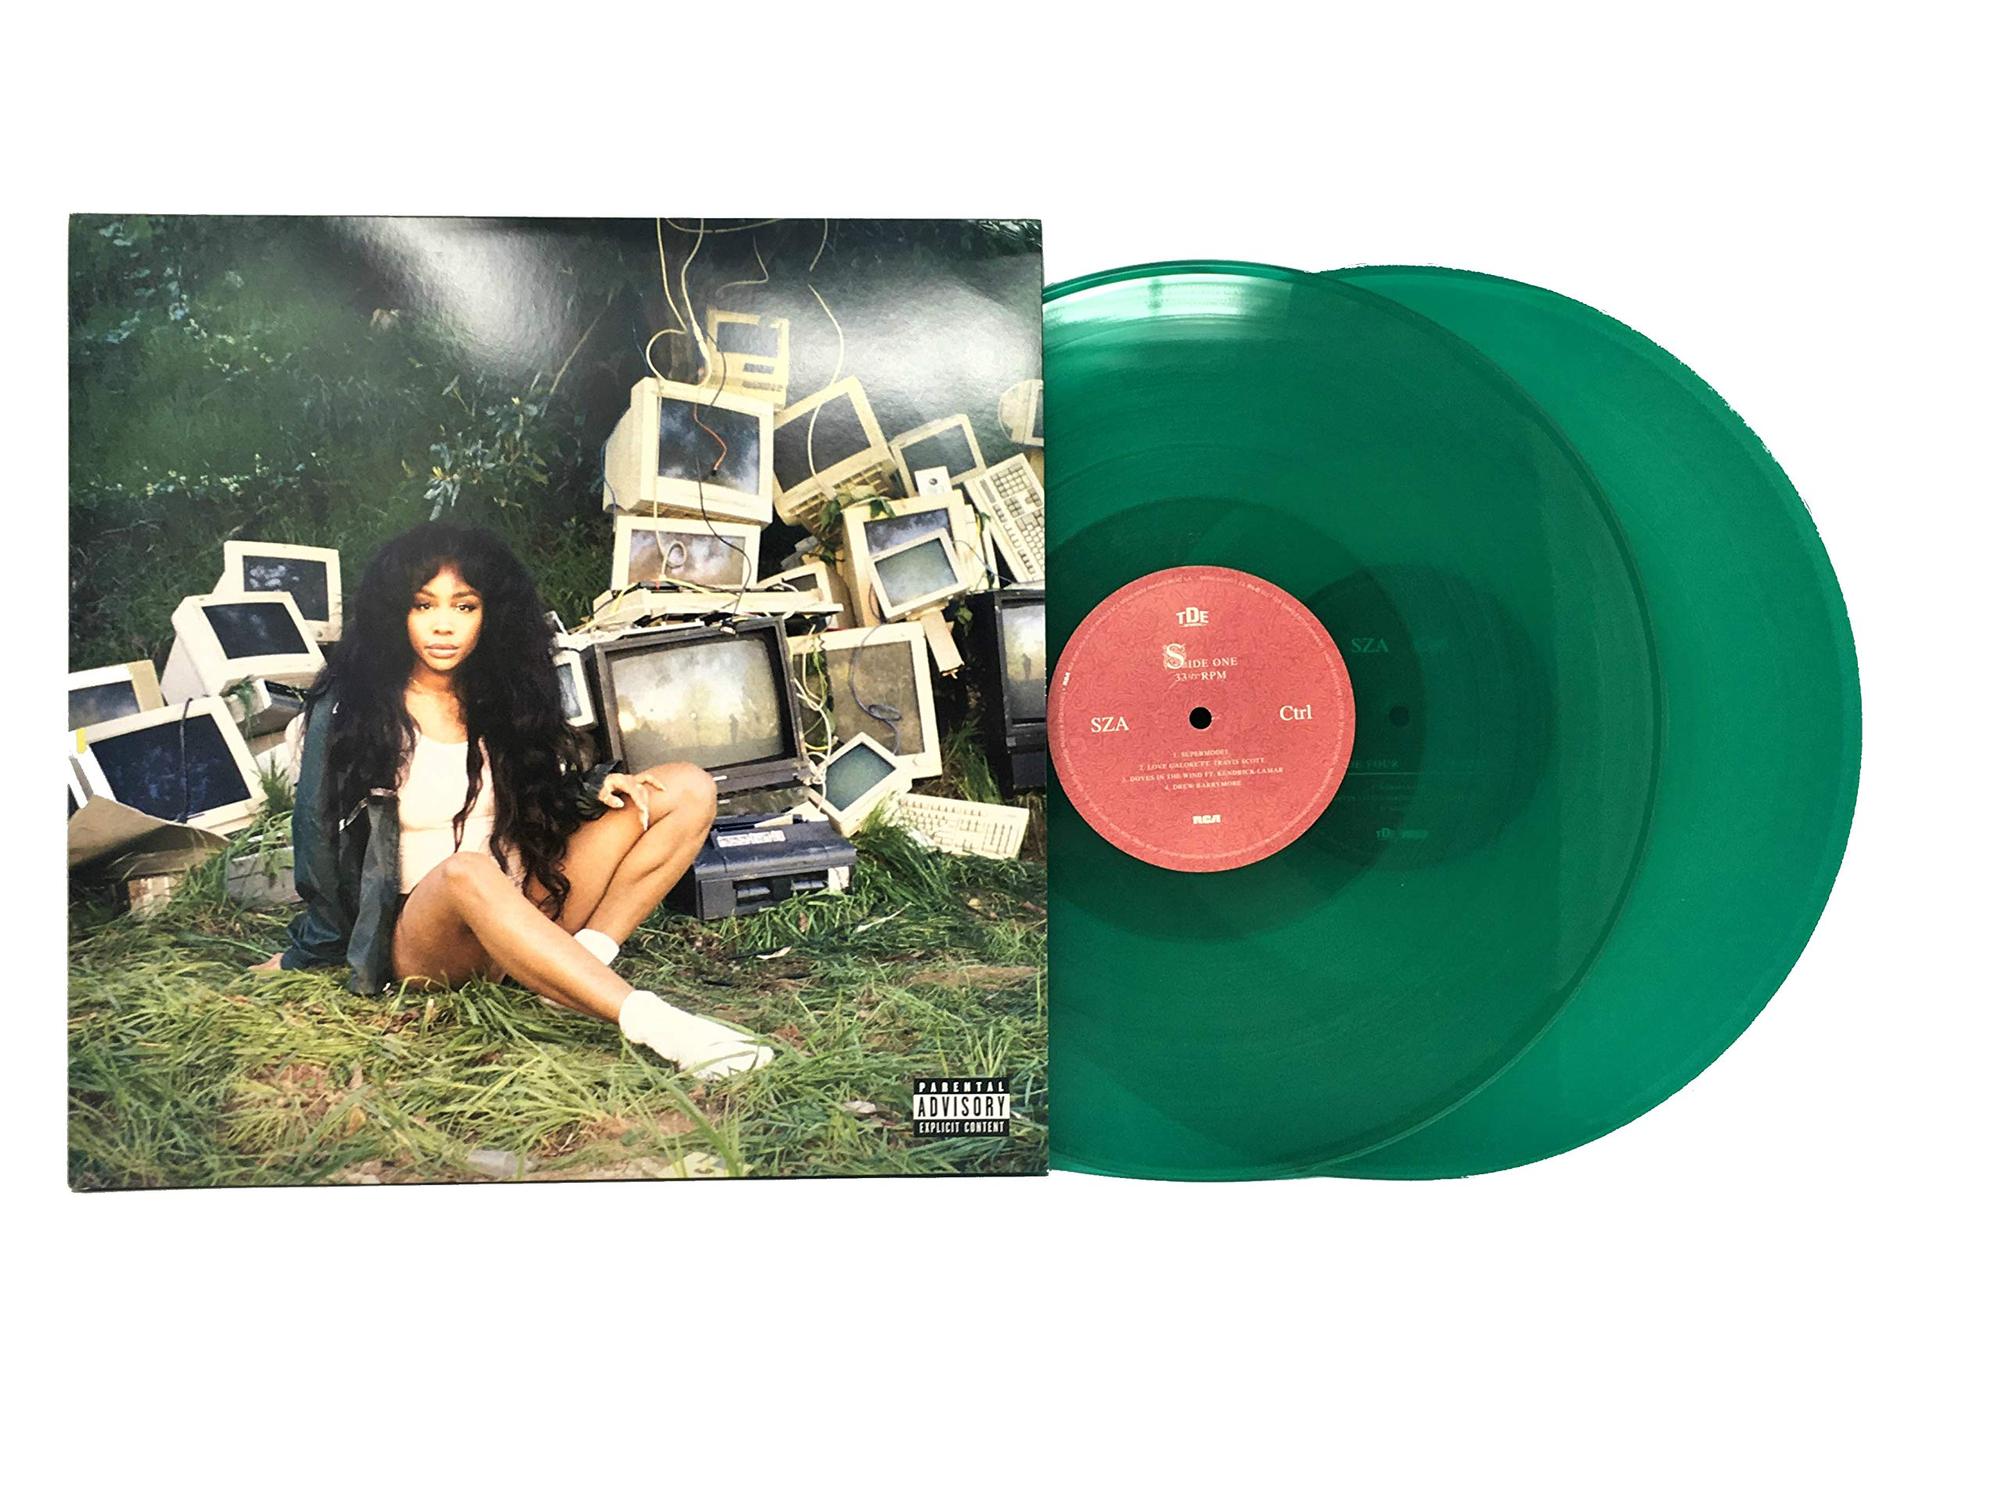 Sza | Ctrl (Green Vinyl)